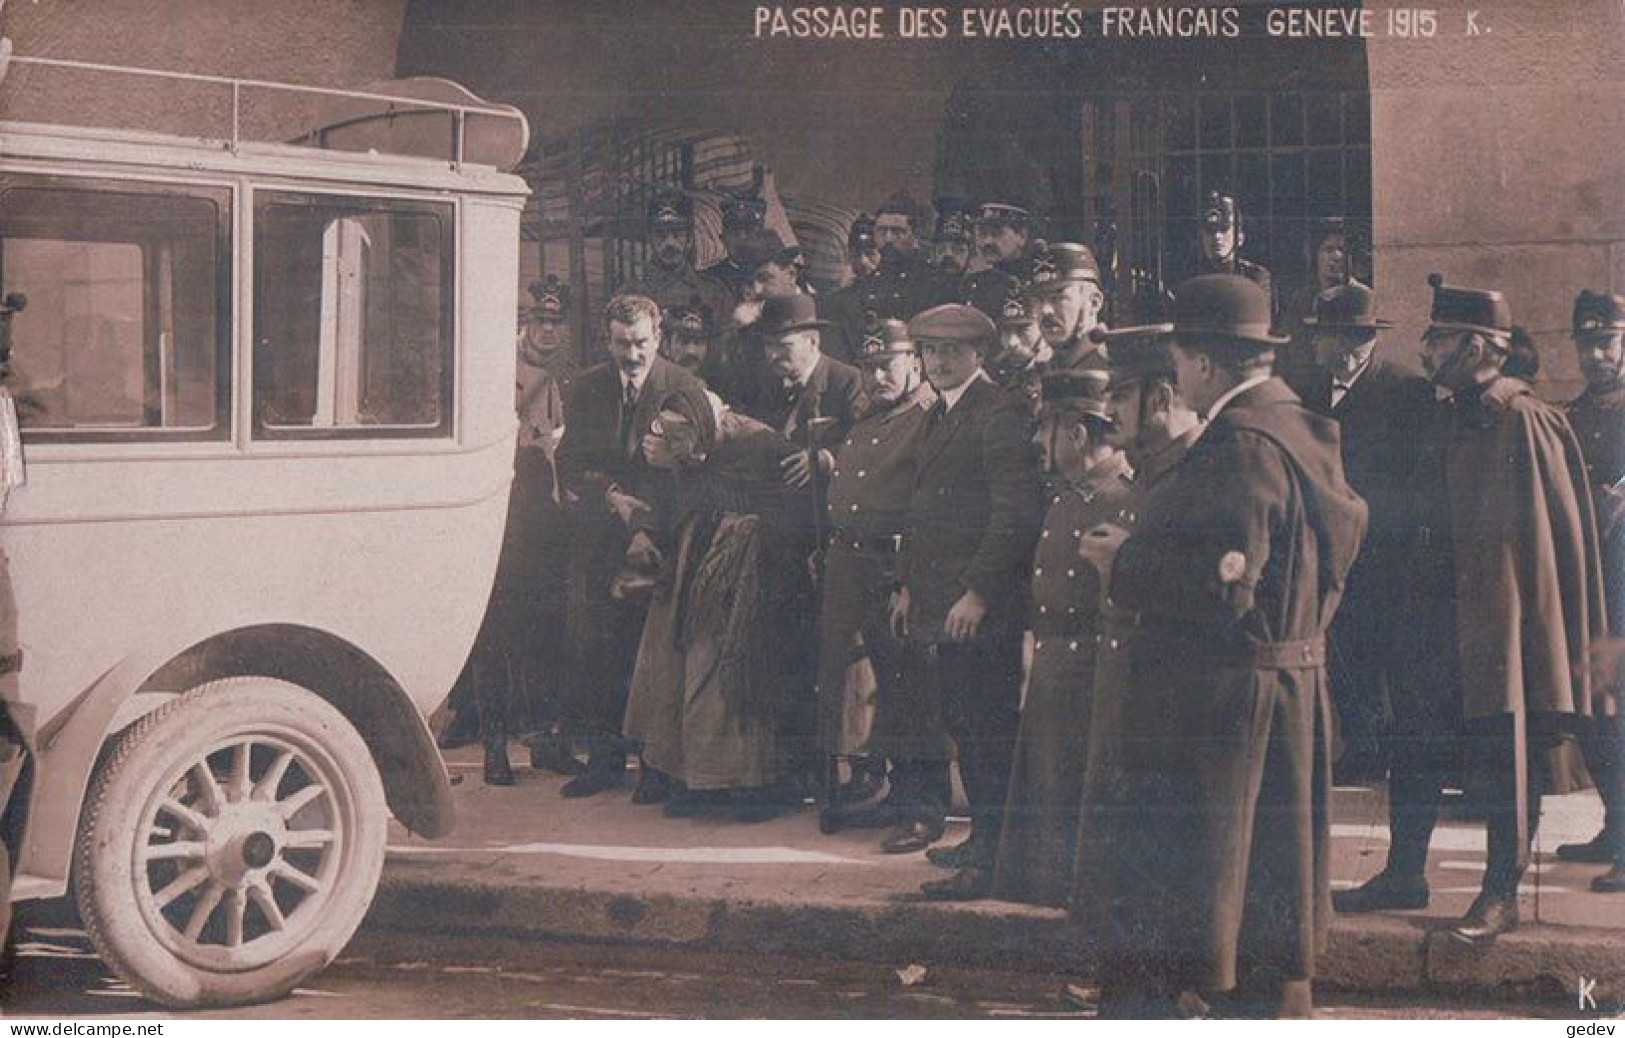 Guerre 14-18, Genève Gare 1915, Passage Des Evacués Français, Autobus (26.4.1915) - War 1914-18